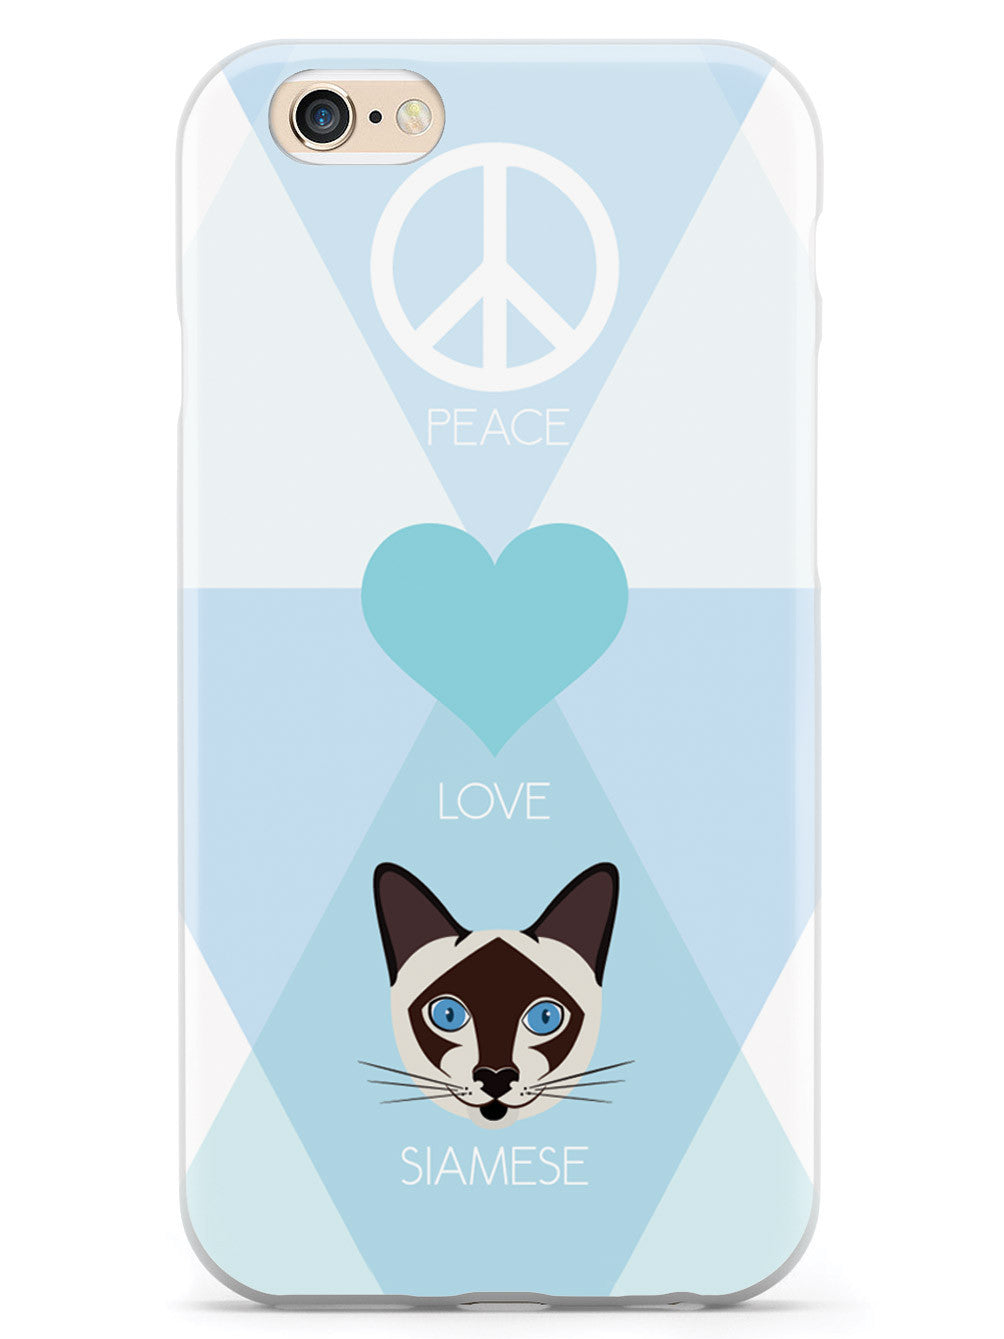 Peace, Love & Siamese Cats Case